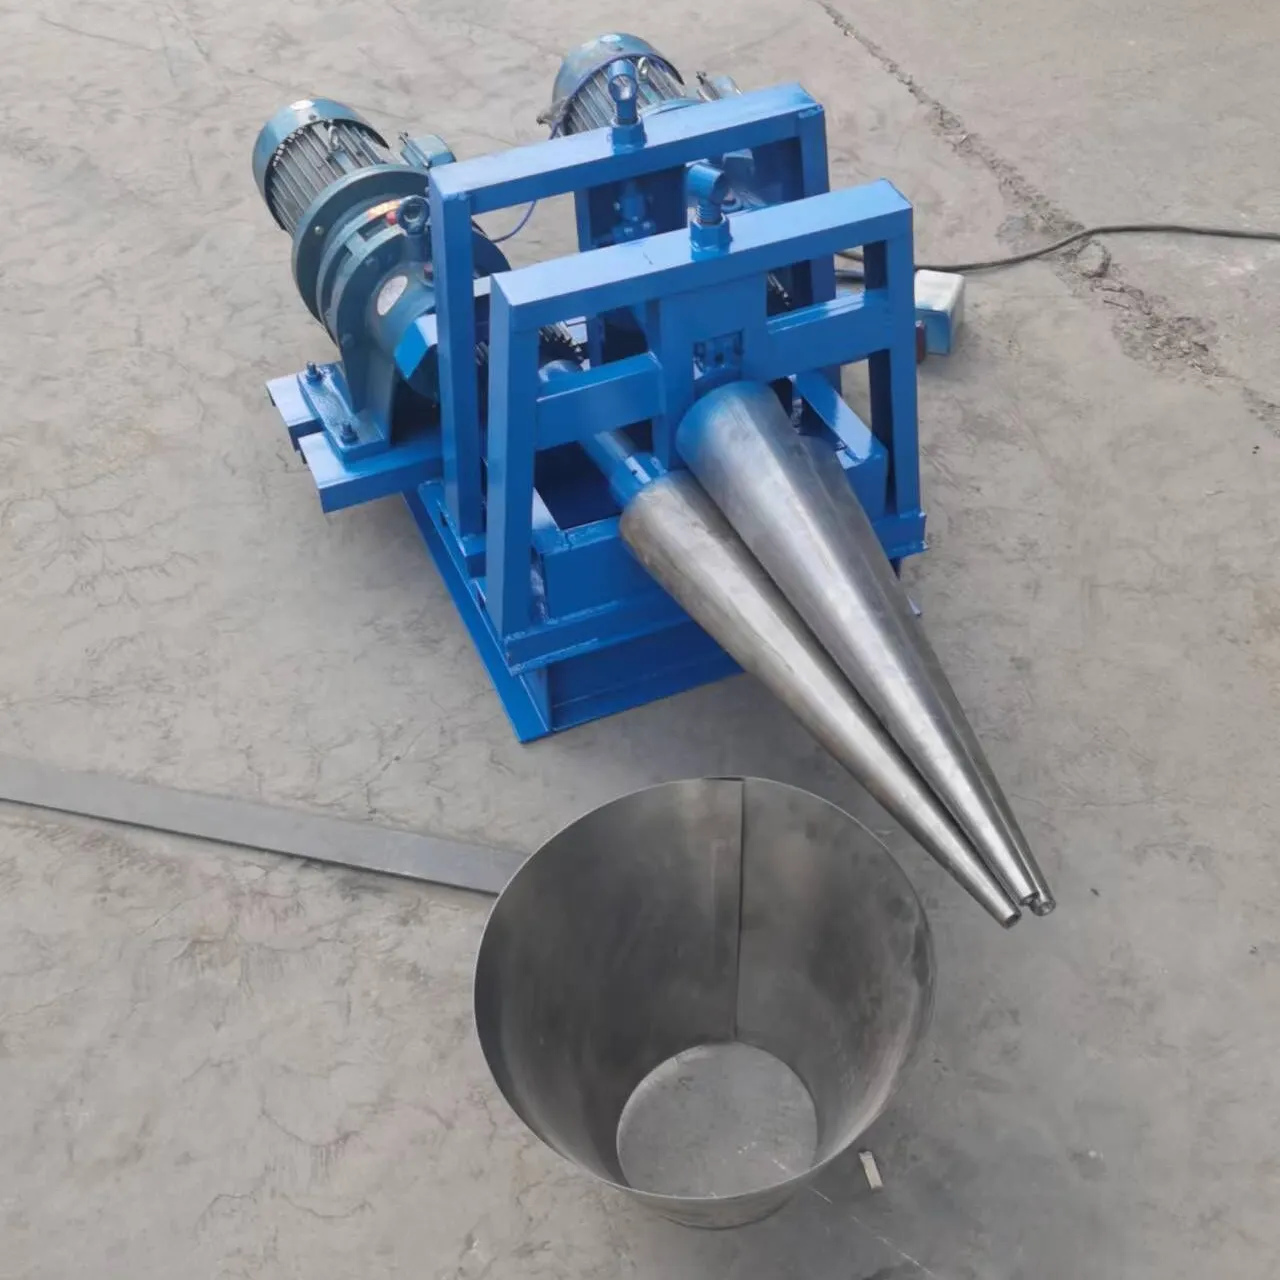 Macchina per laminazione a piastra conica macchina per la formatura di barili conici petrolchimici avvolgitrice conica per piastre di ferro